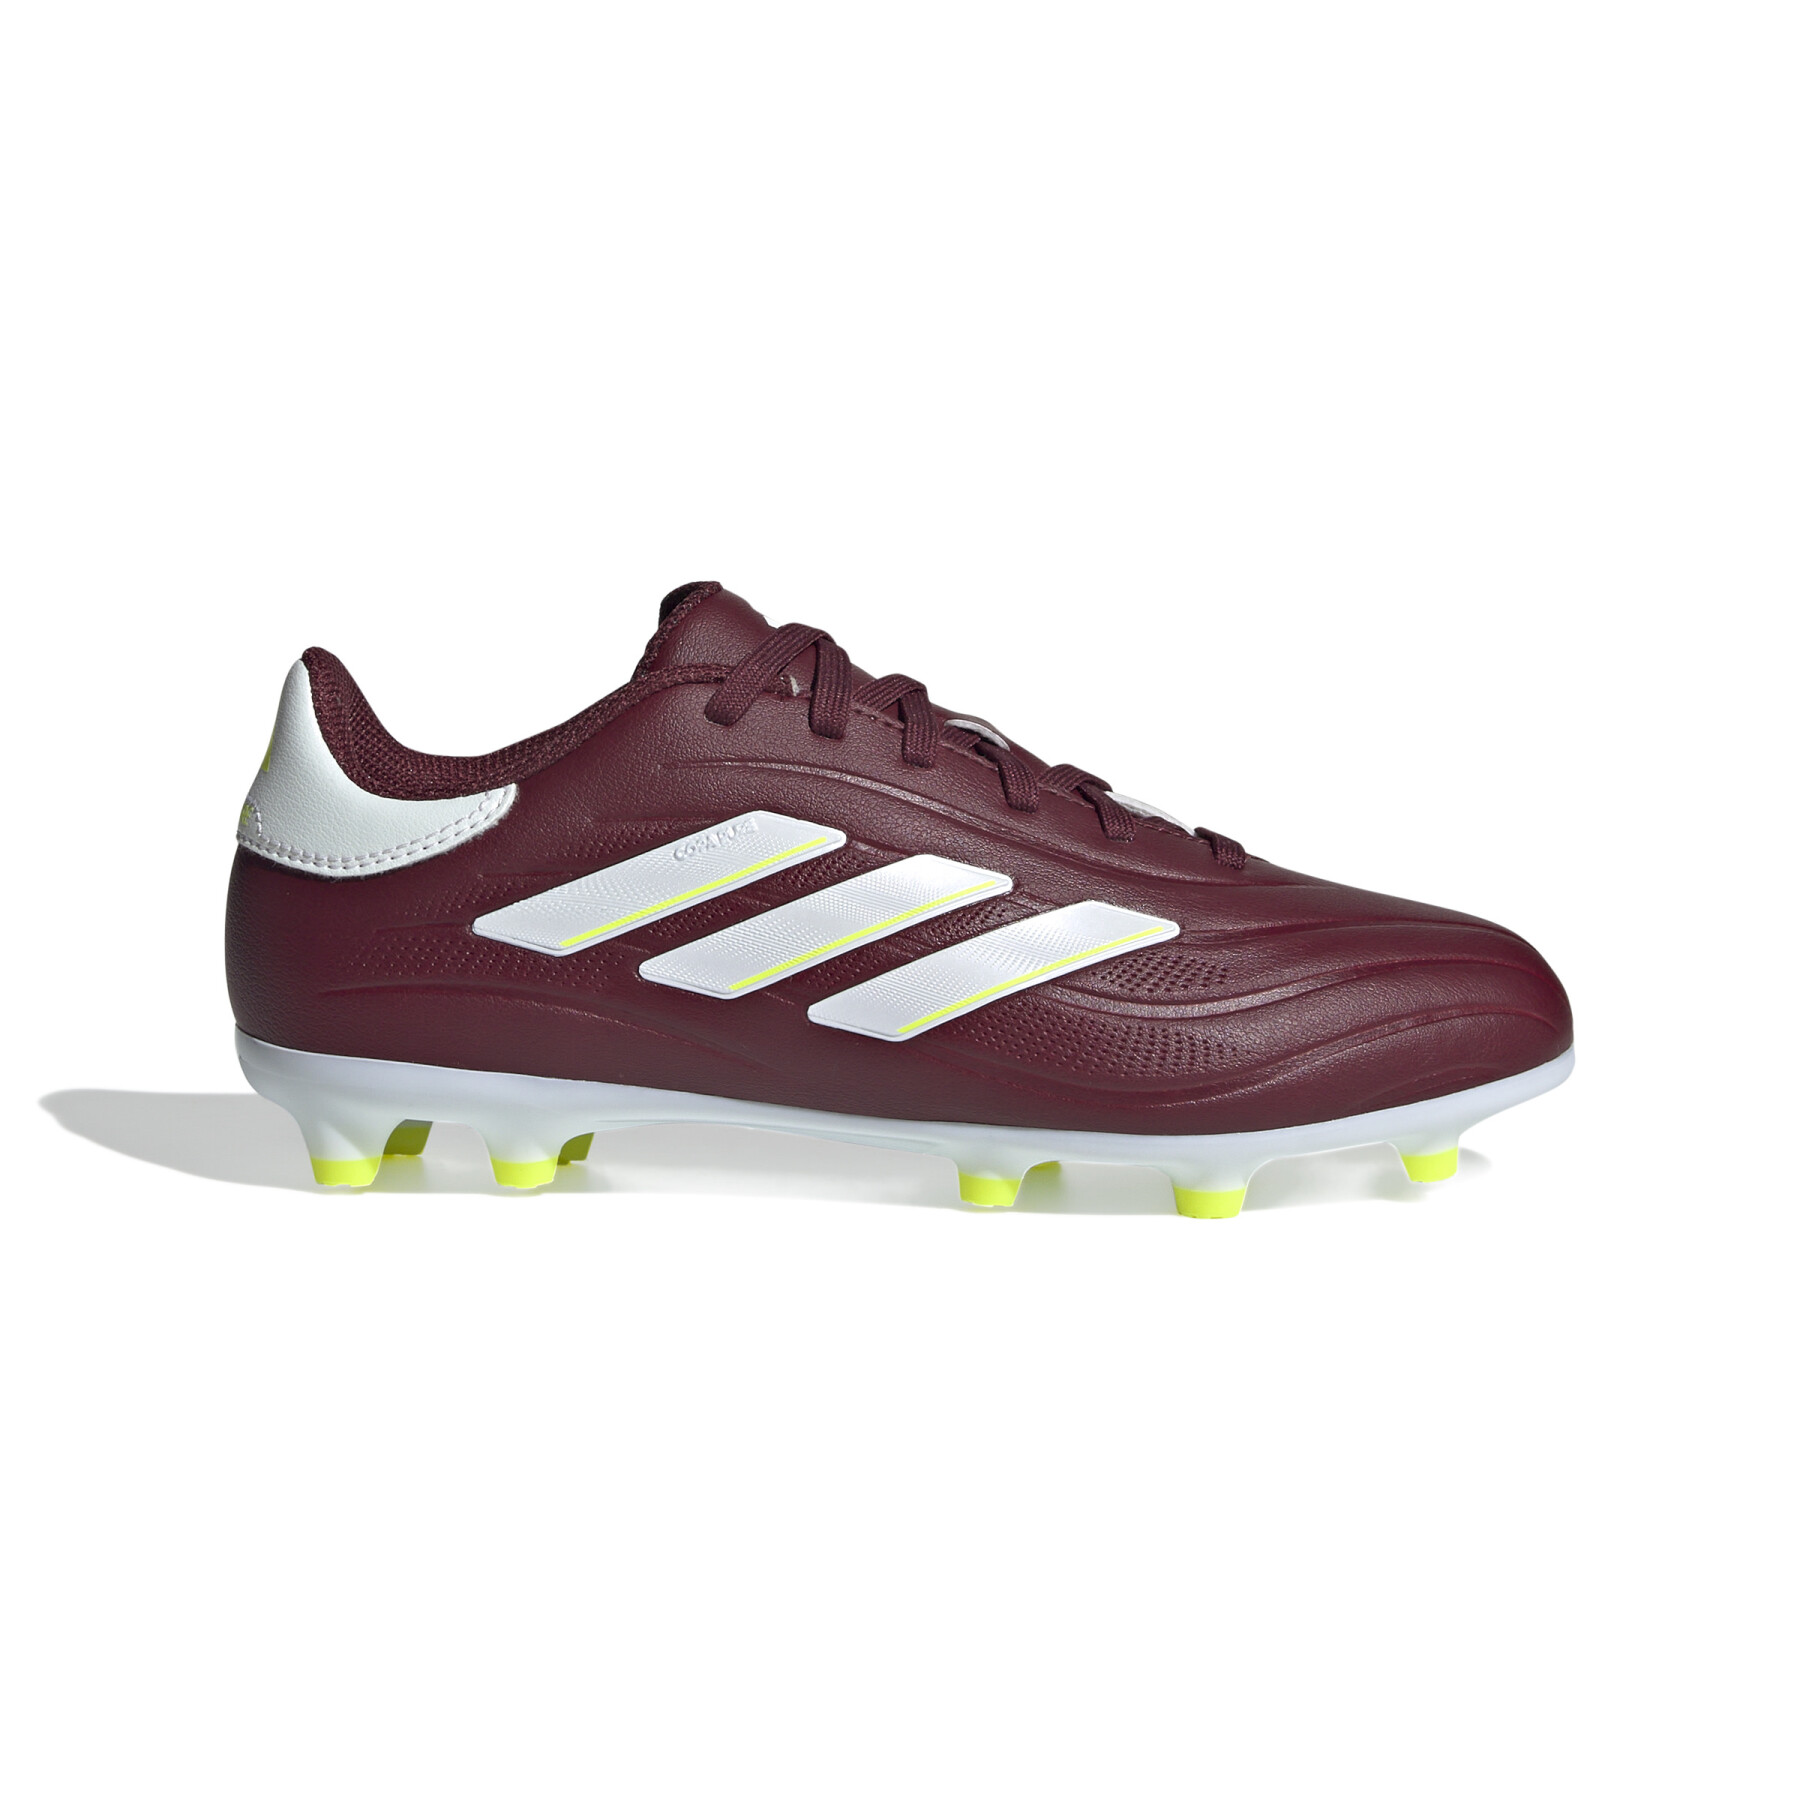 Children's soccer shoes adidas Copa Pure 2 League FG